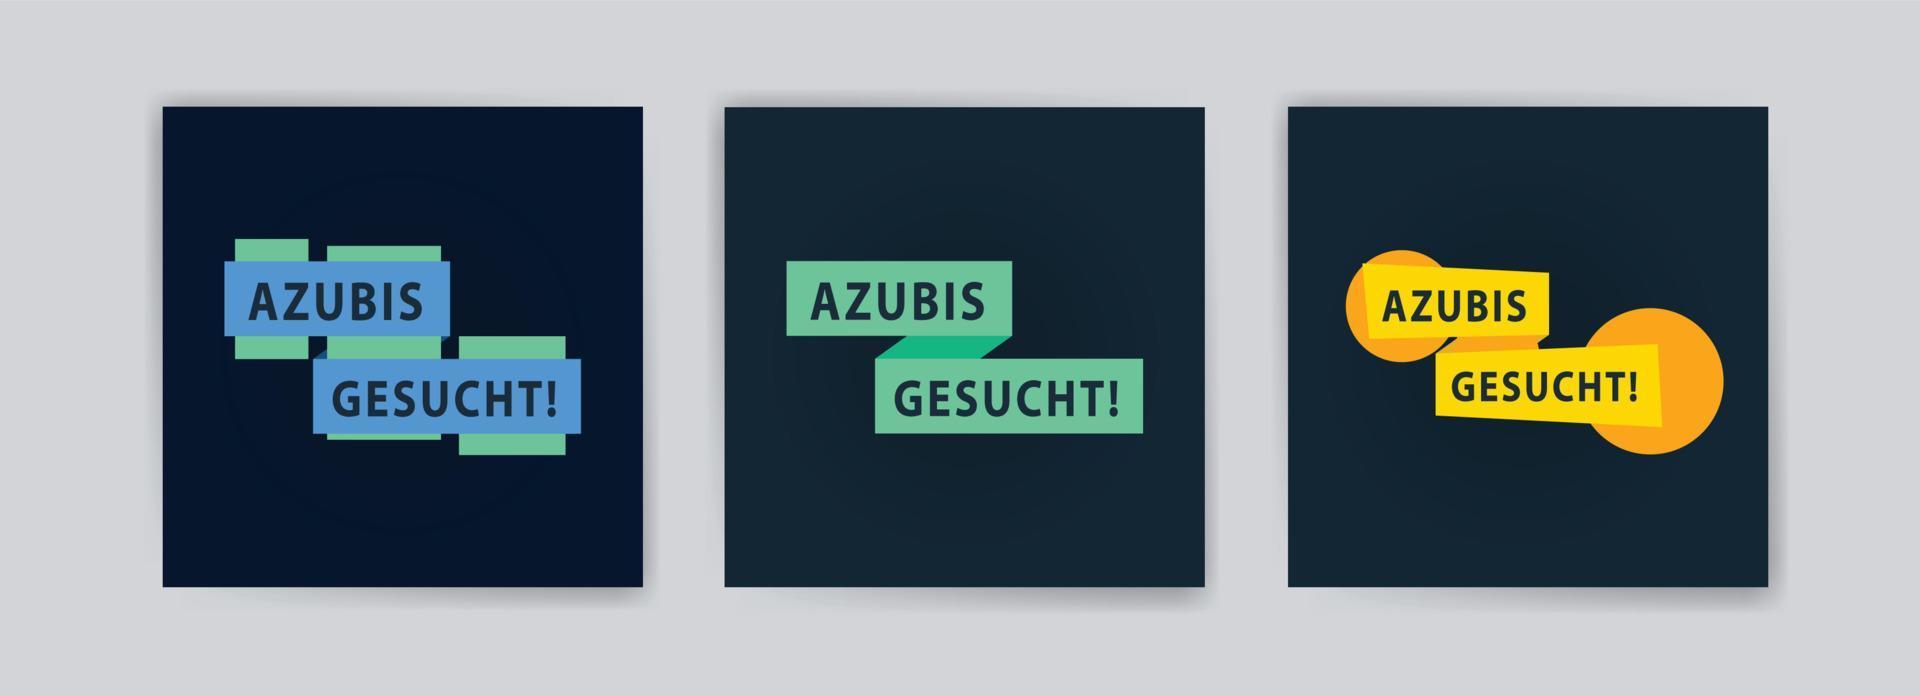 azubis gesucht. vectorbanners voor achtergronden, wenskaarten, advertenties op sociale media en ansichtkaarten. vector